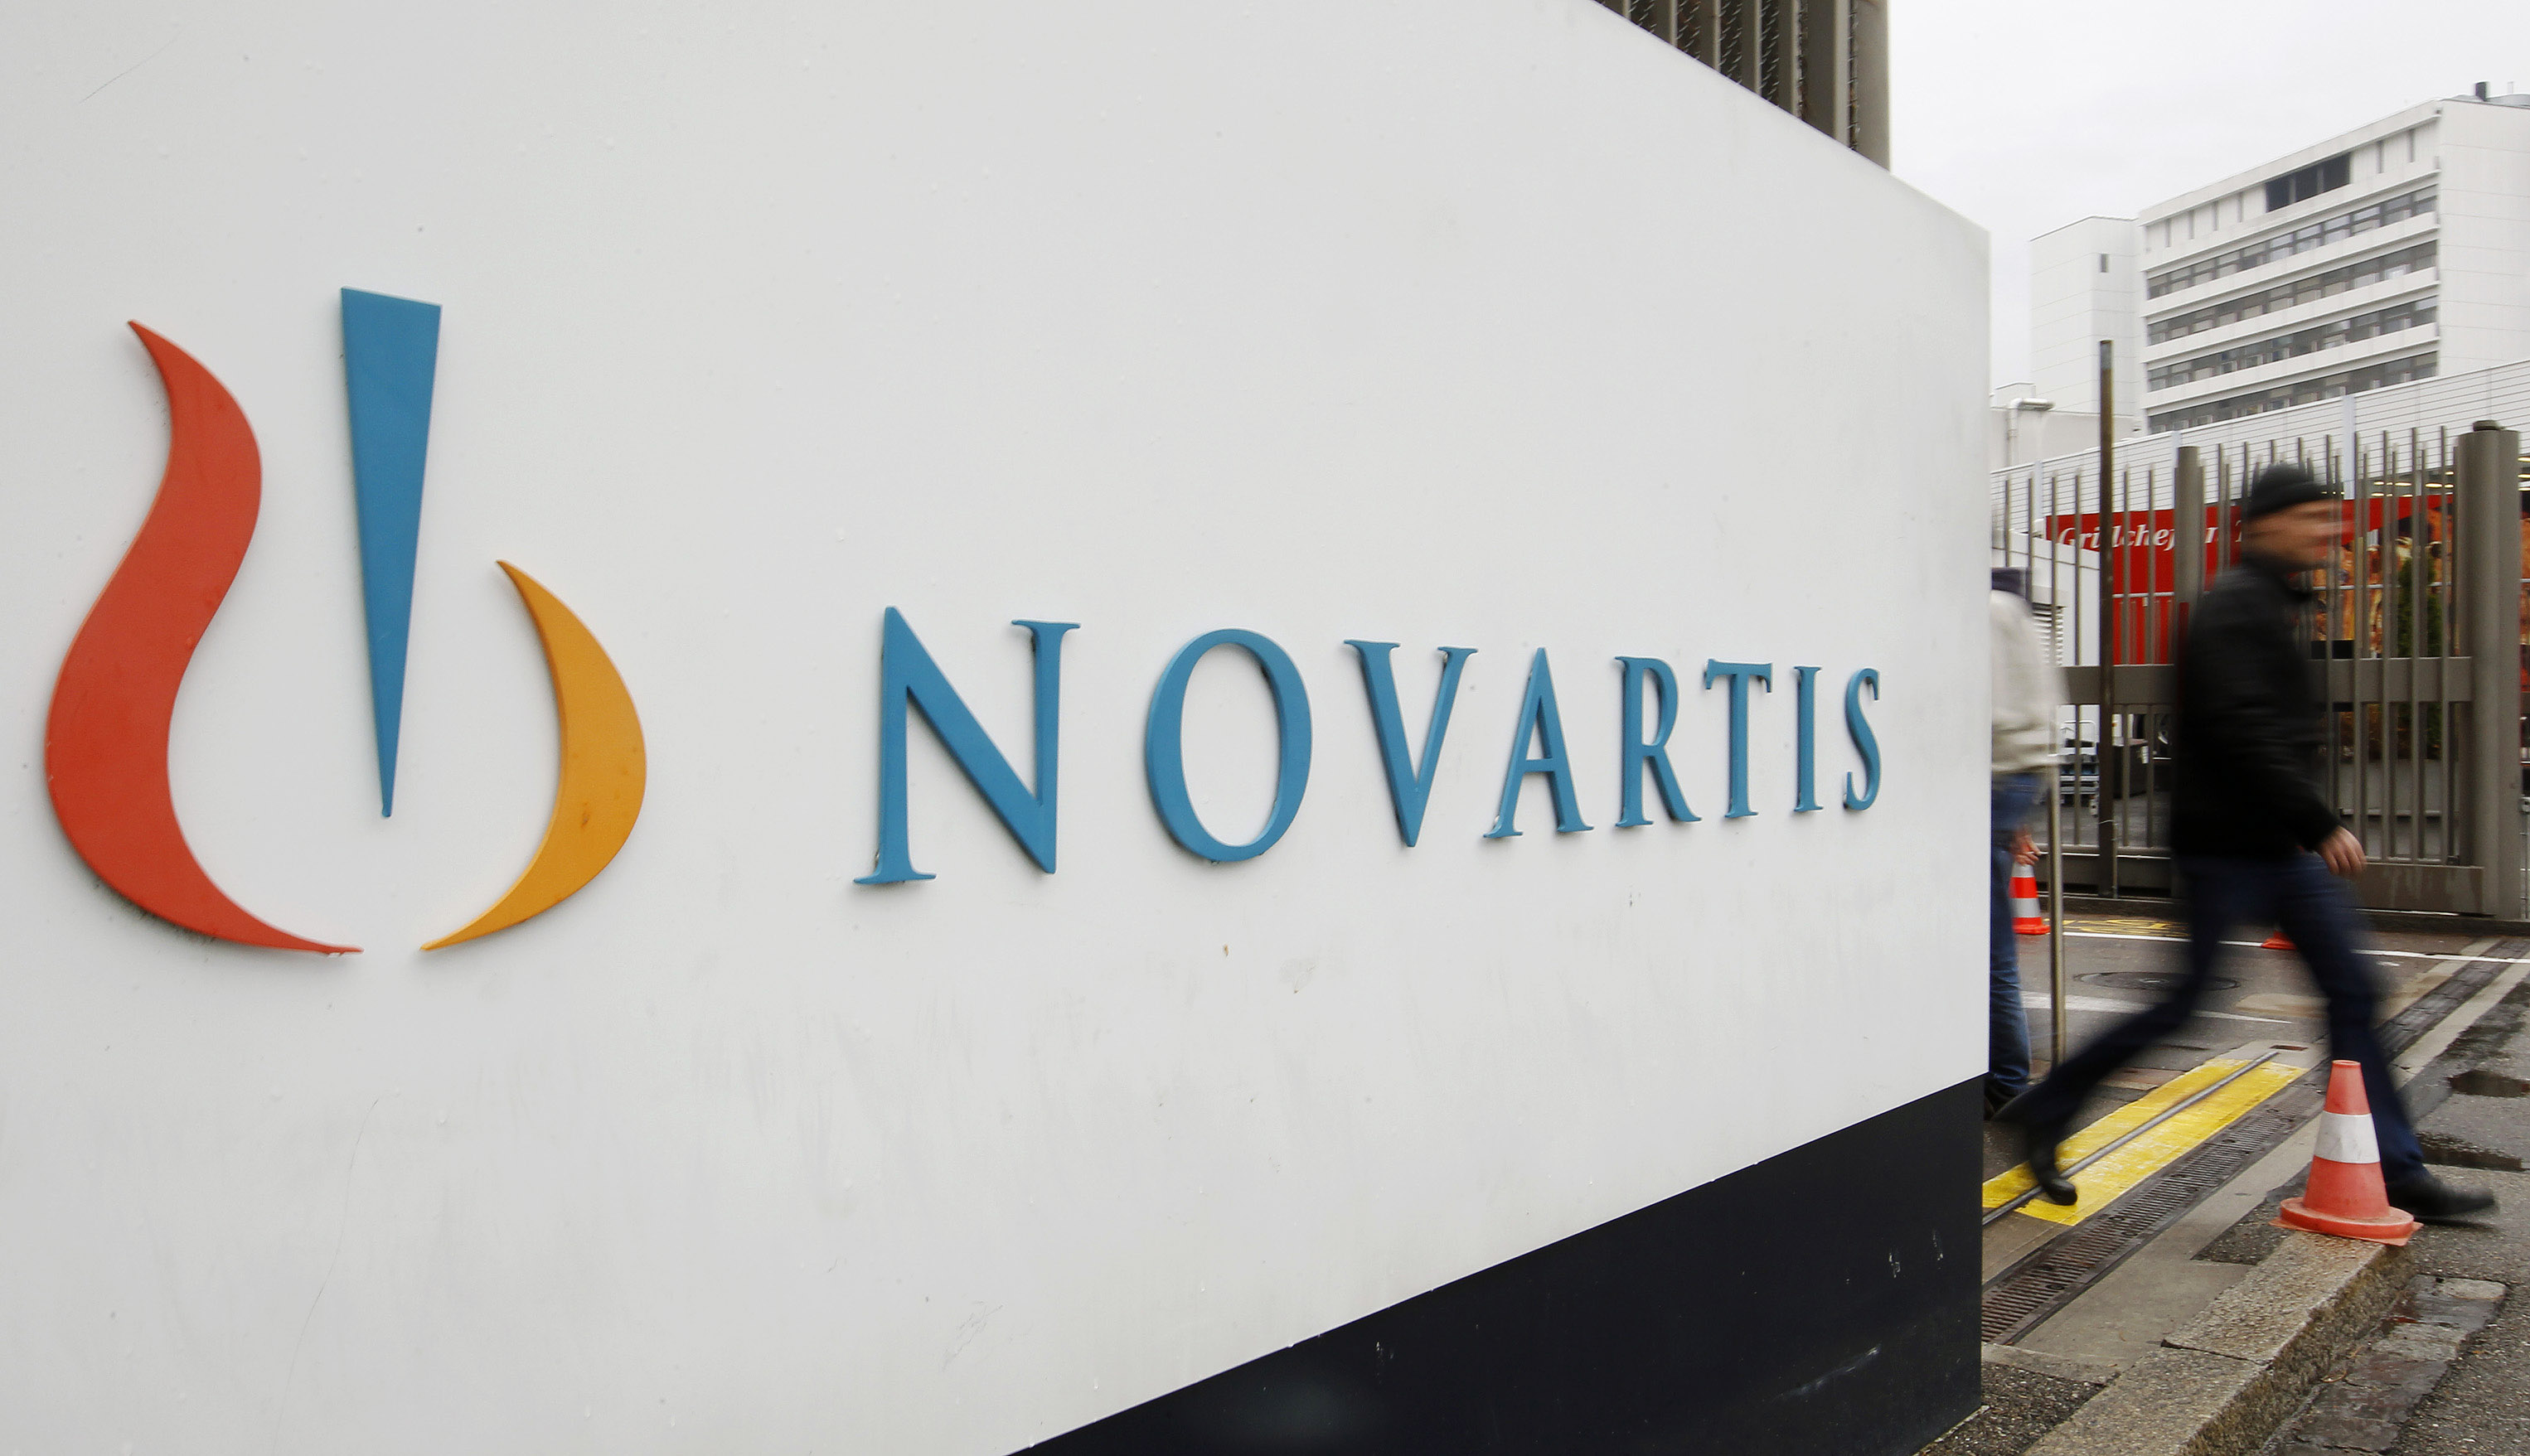 Μόνο μέσω νοσοκομείων και φαρμακείων η διάθεση έξι σκευασμάτων της Novartis